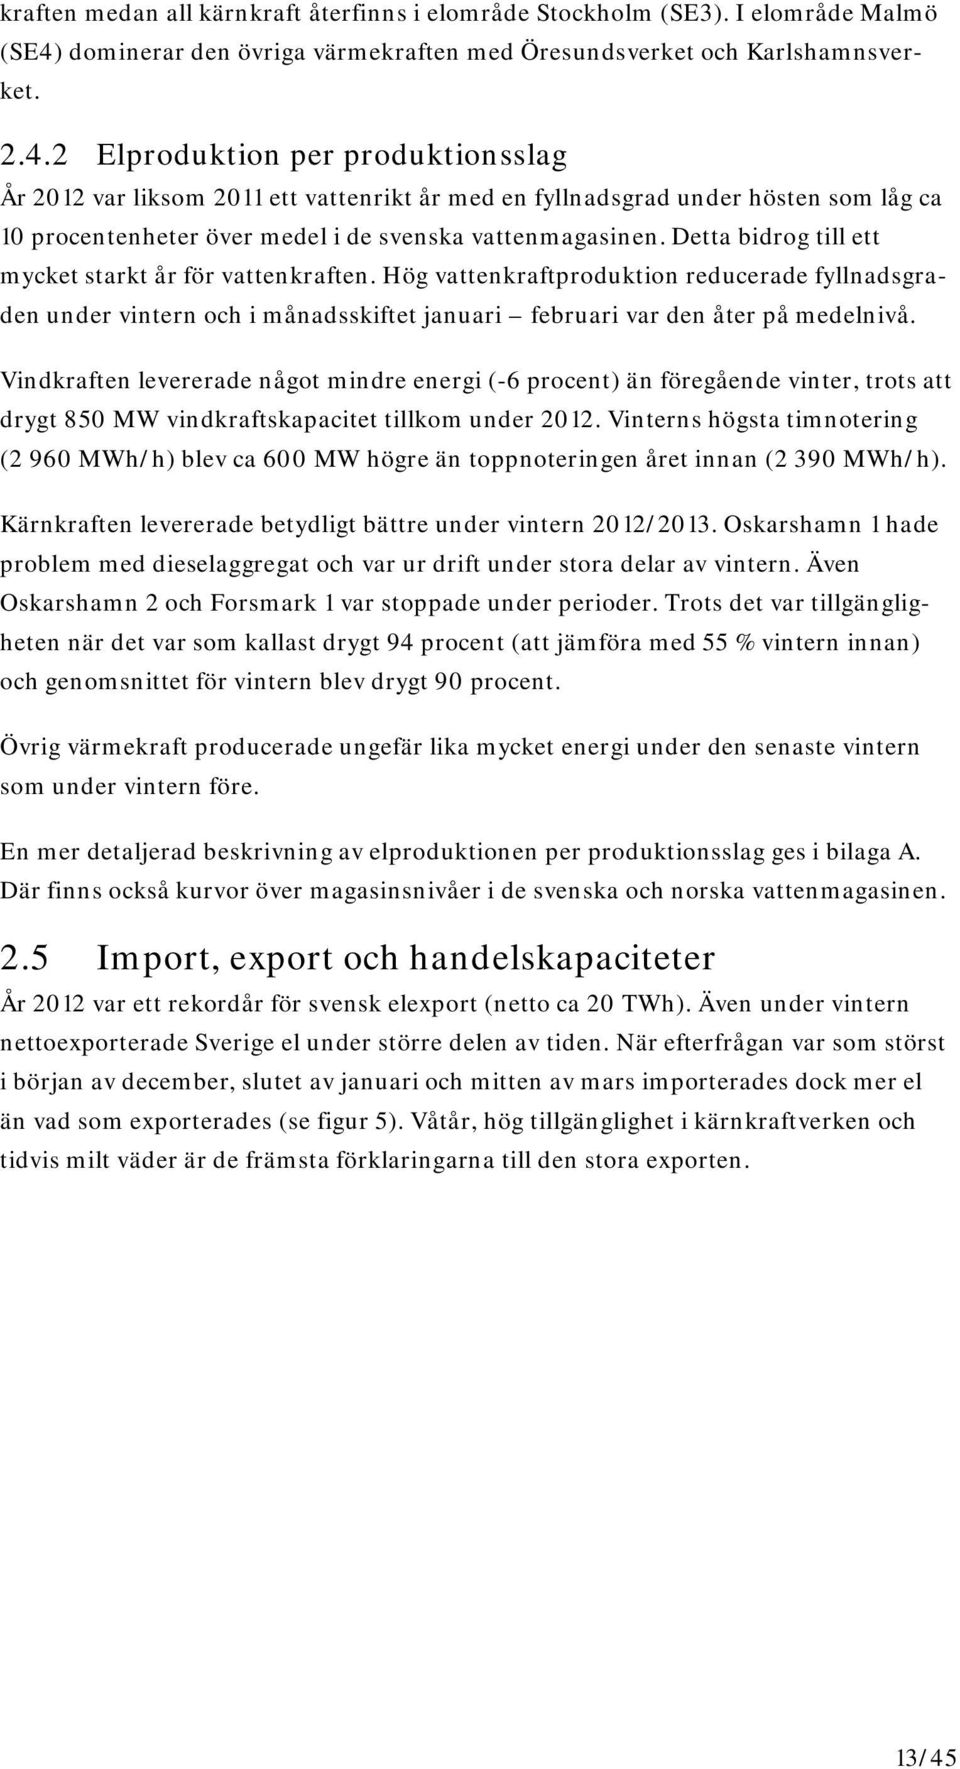 2 Elproduktion per produktionsslag År 2012 var liksom 2011 ett vattenrikt år med en fyllnadsgrad under hösten som låg ca 10 procentenheter över medel i de svenska vattenmagasinen.